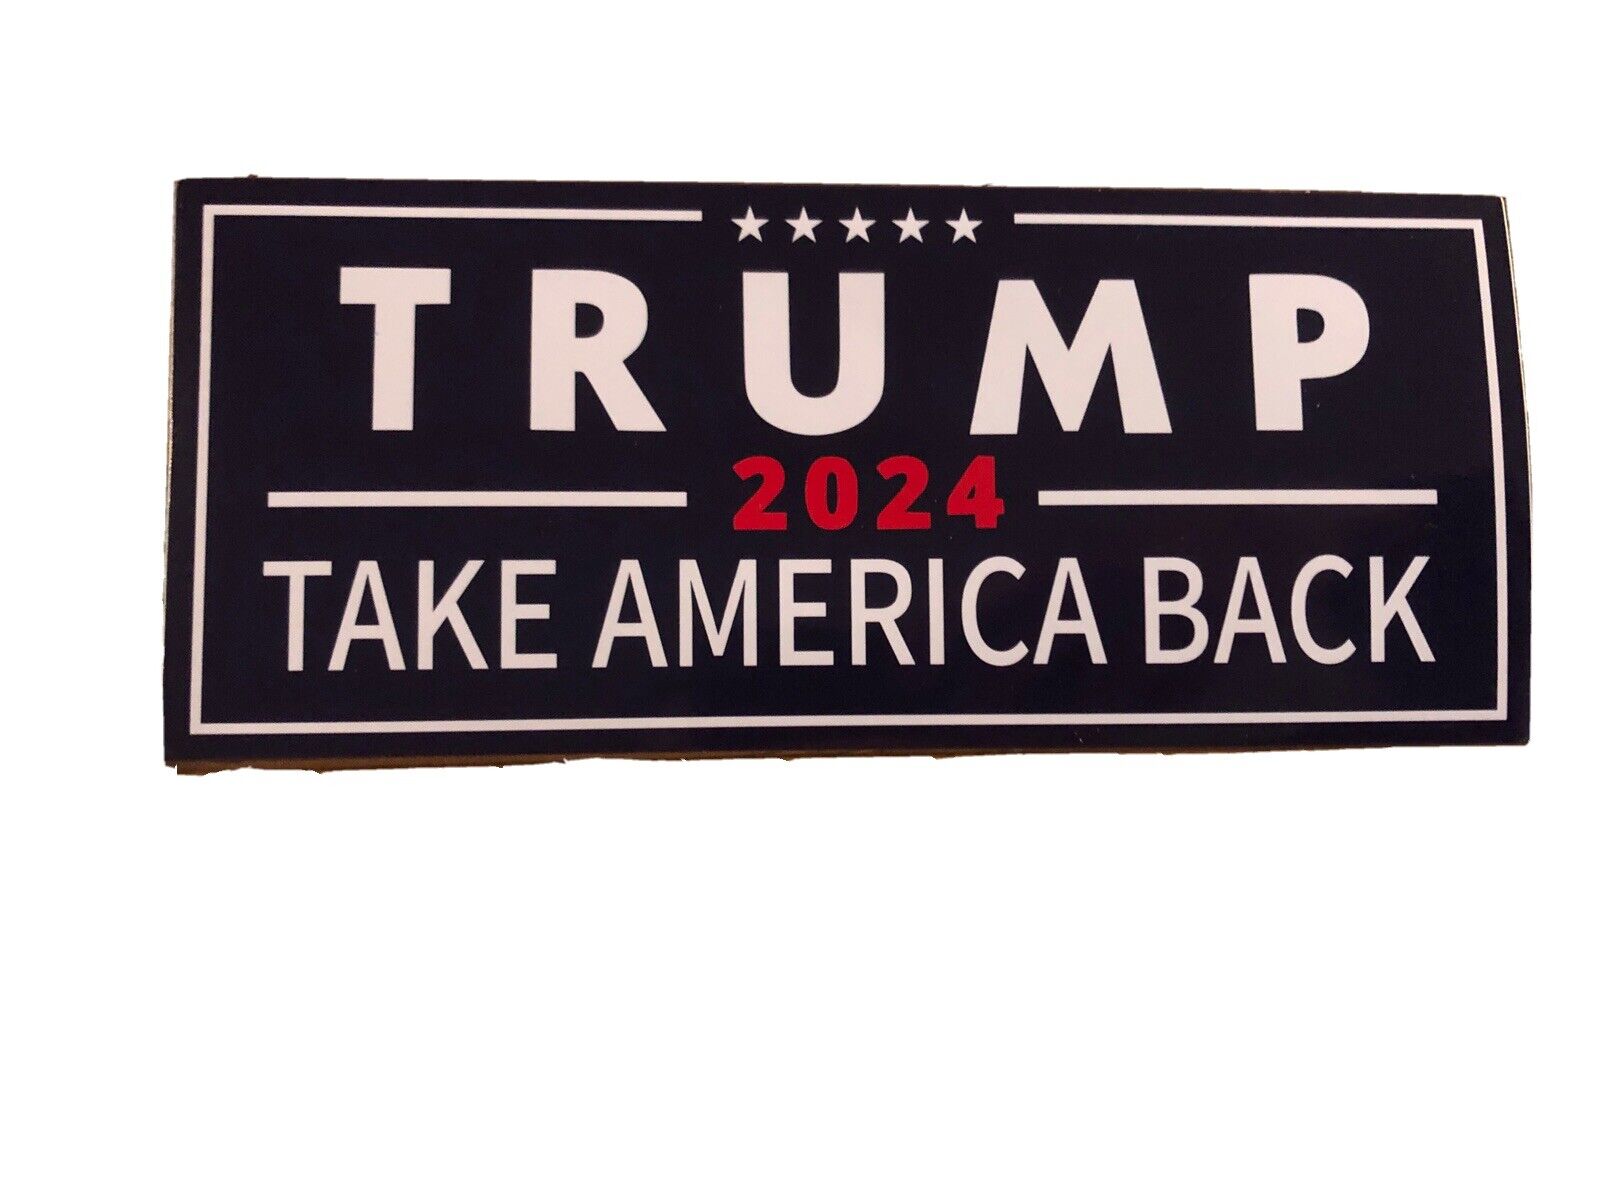 Trump 2024 Bumper Sticker 10 Pack